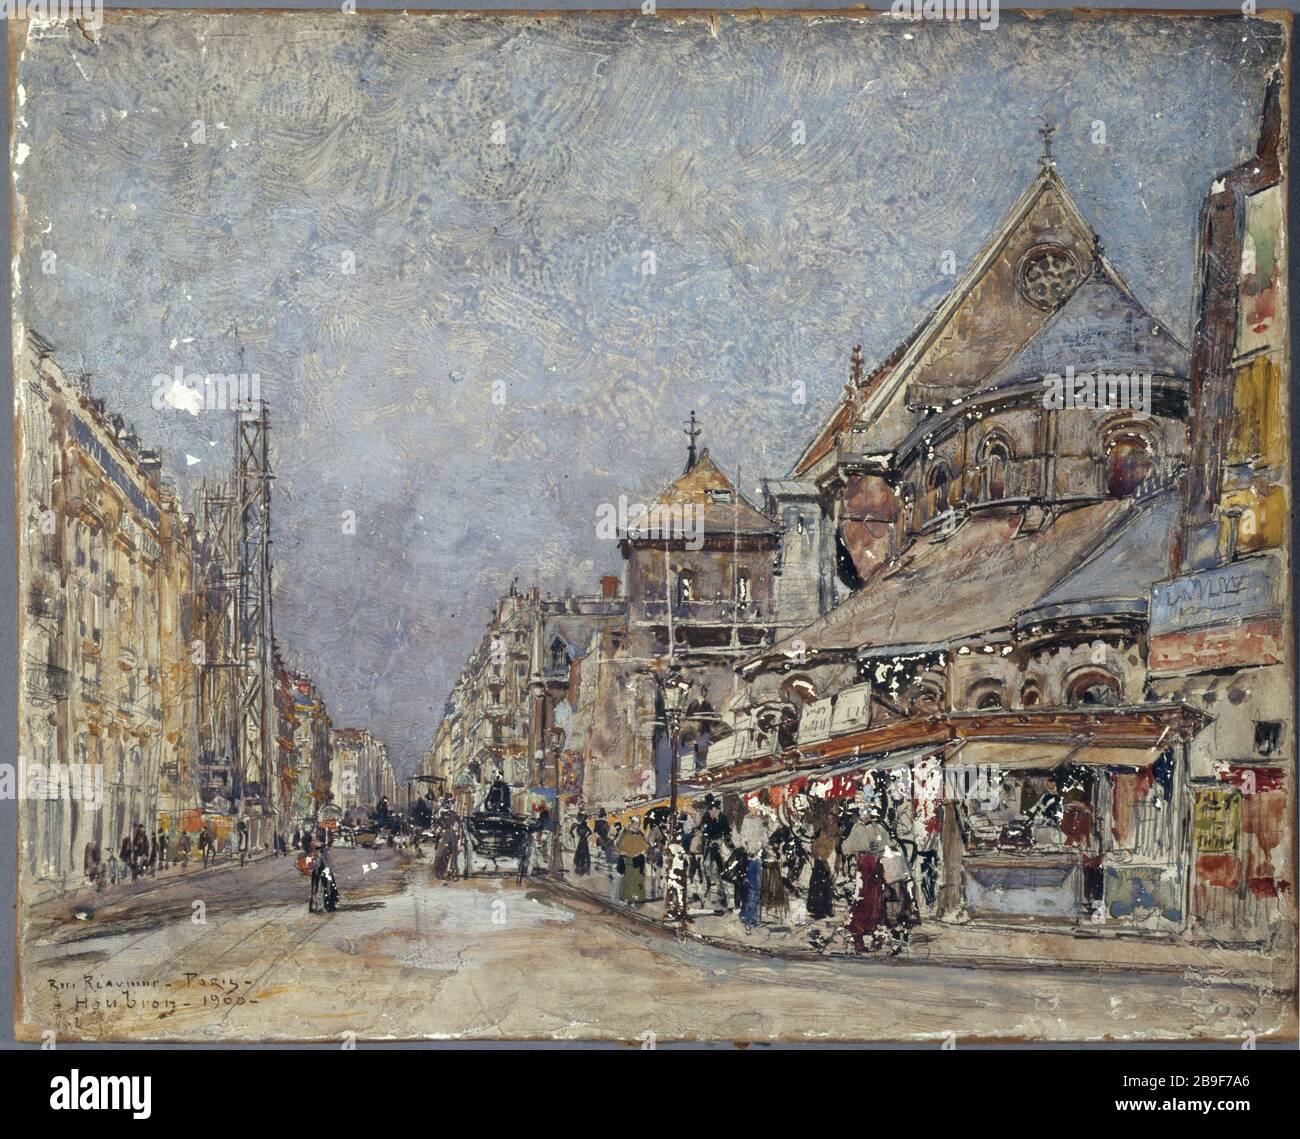 Rue Réaumur Frédéric-Anatole Houbron (1851-1908). "La rue Réaumur". Peinture sur enduit frais sur toile, 1900. Parigi, musée Carnavalet. Foto Stock